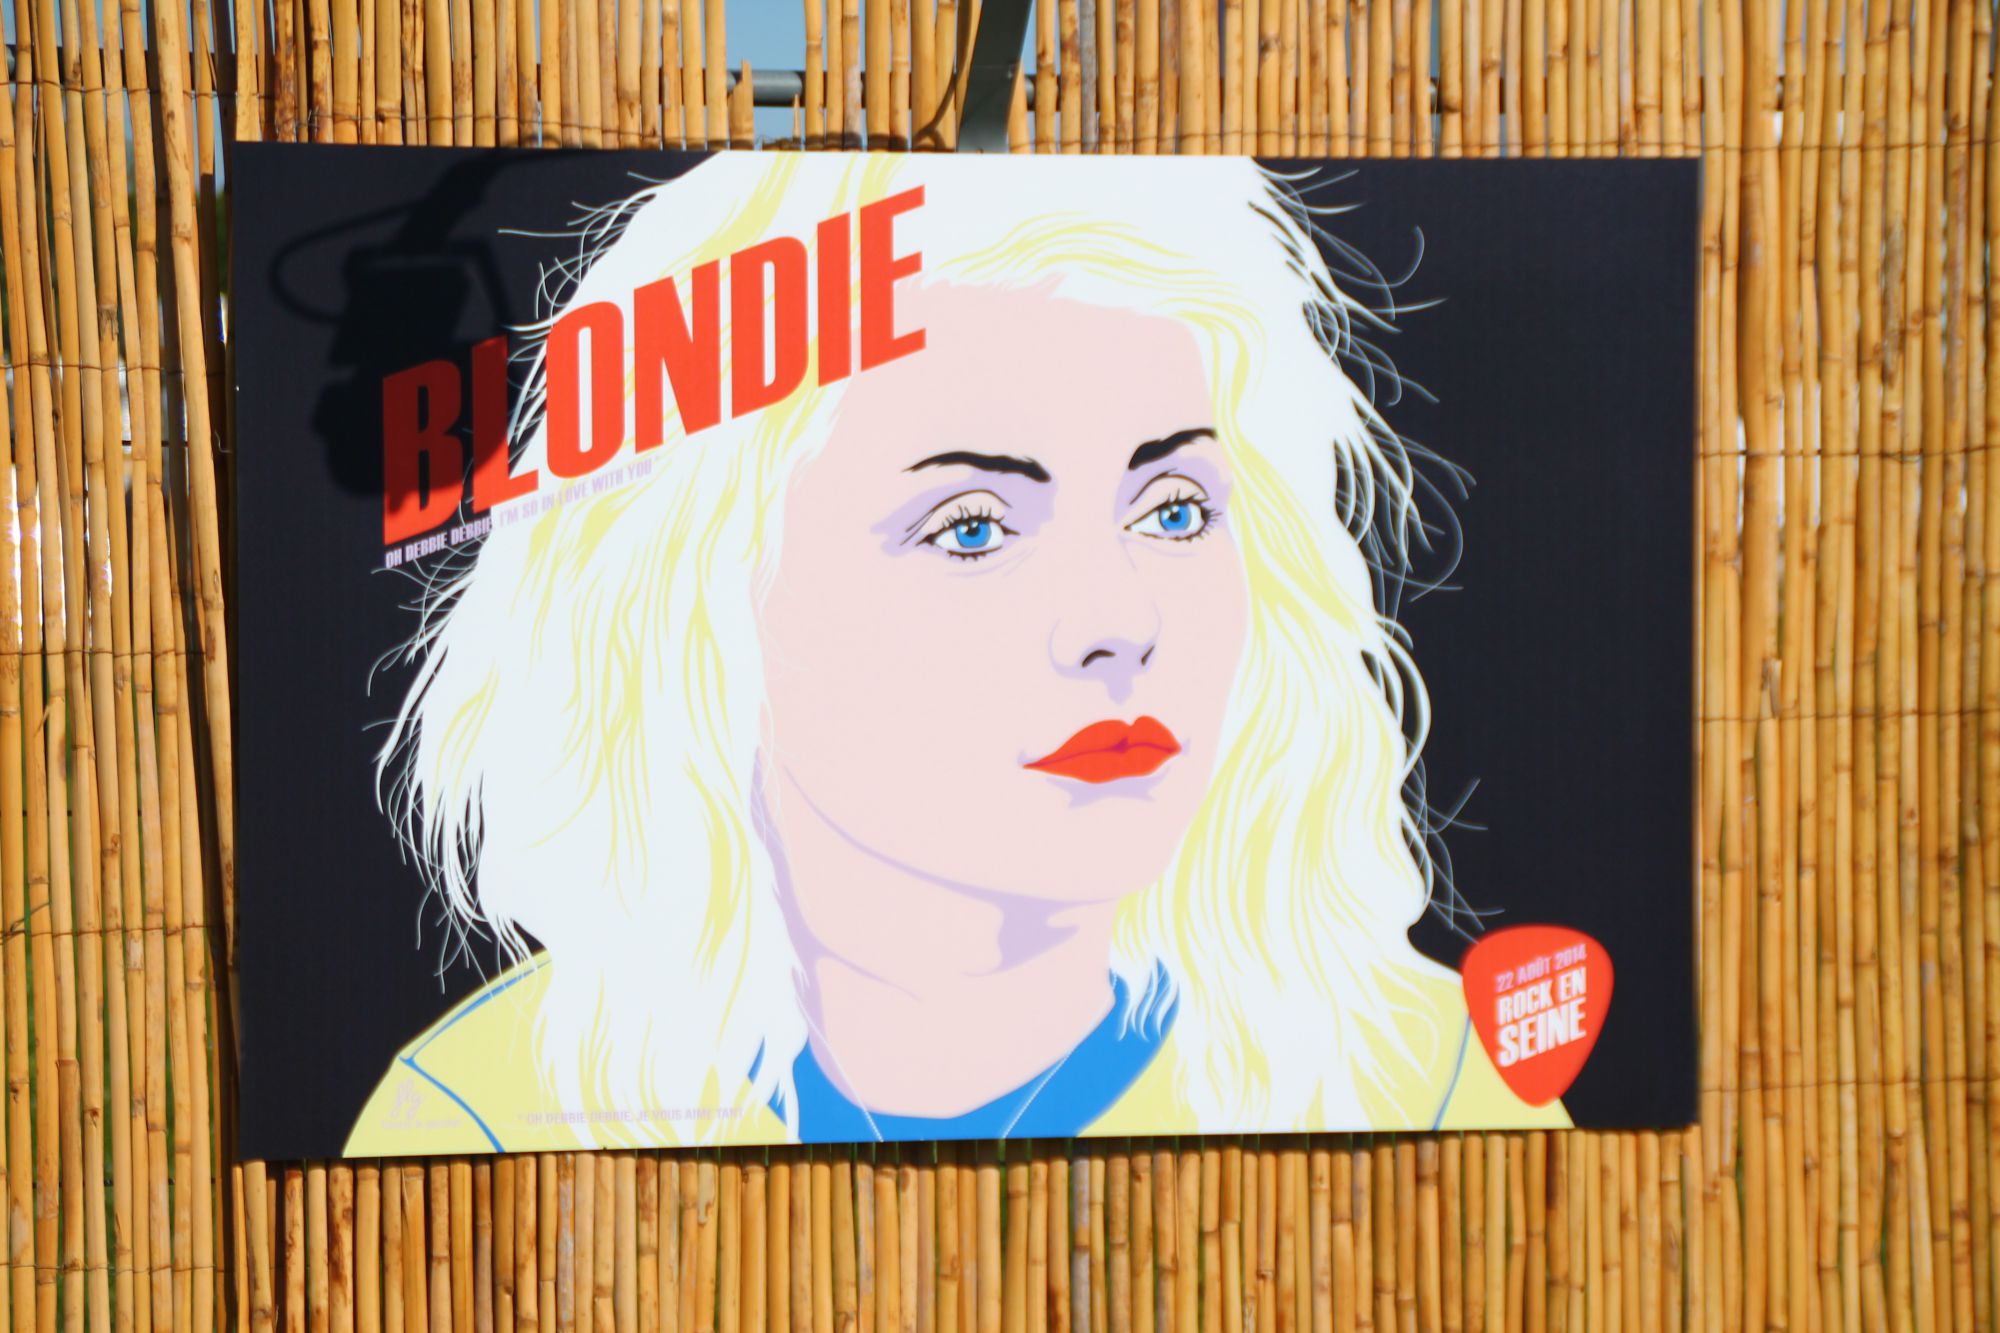 L'expo Rock Art (Blondie)